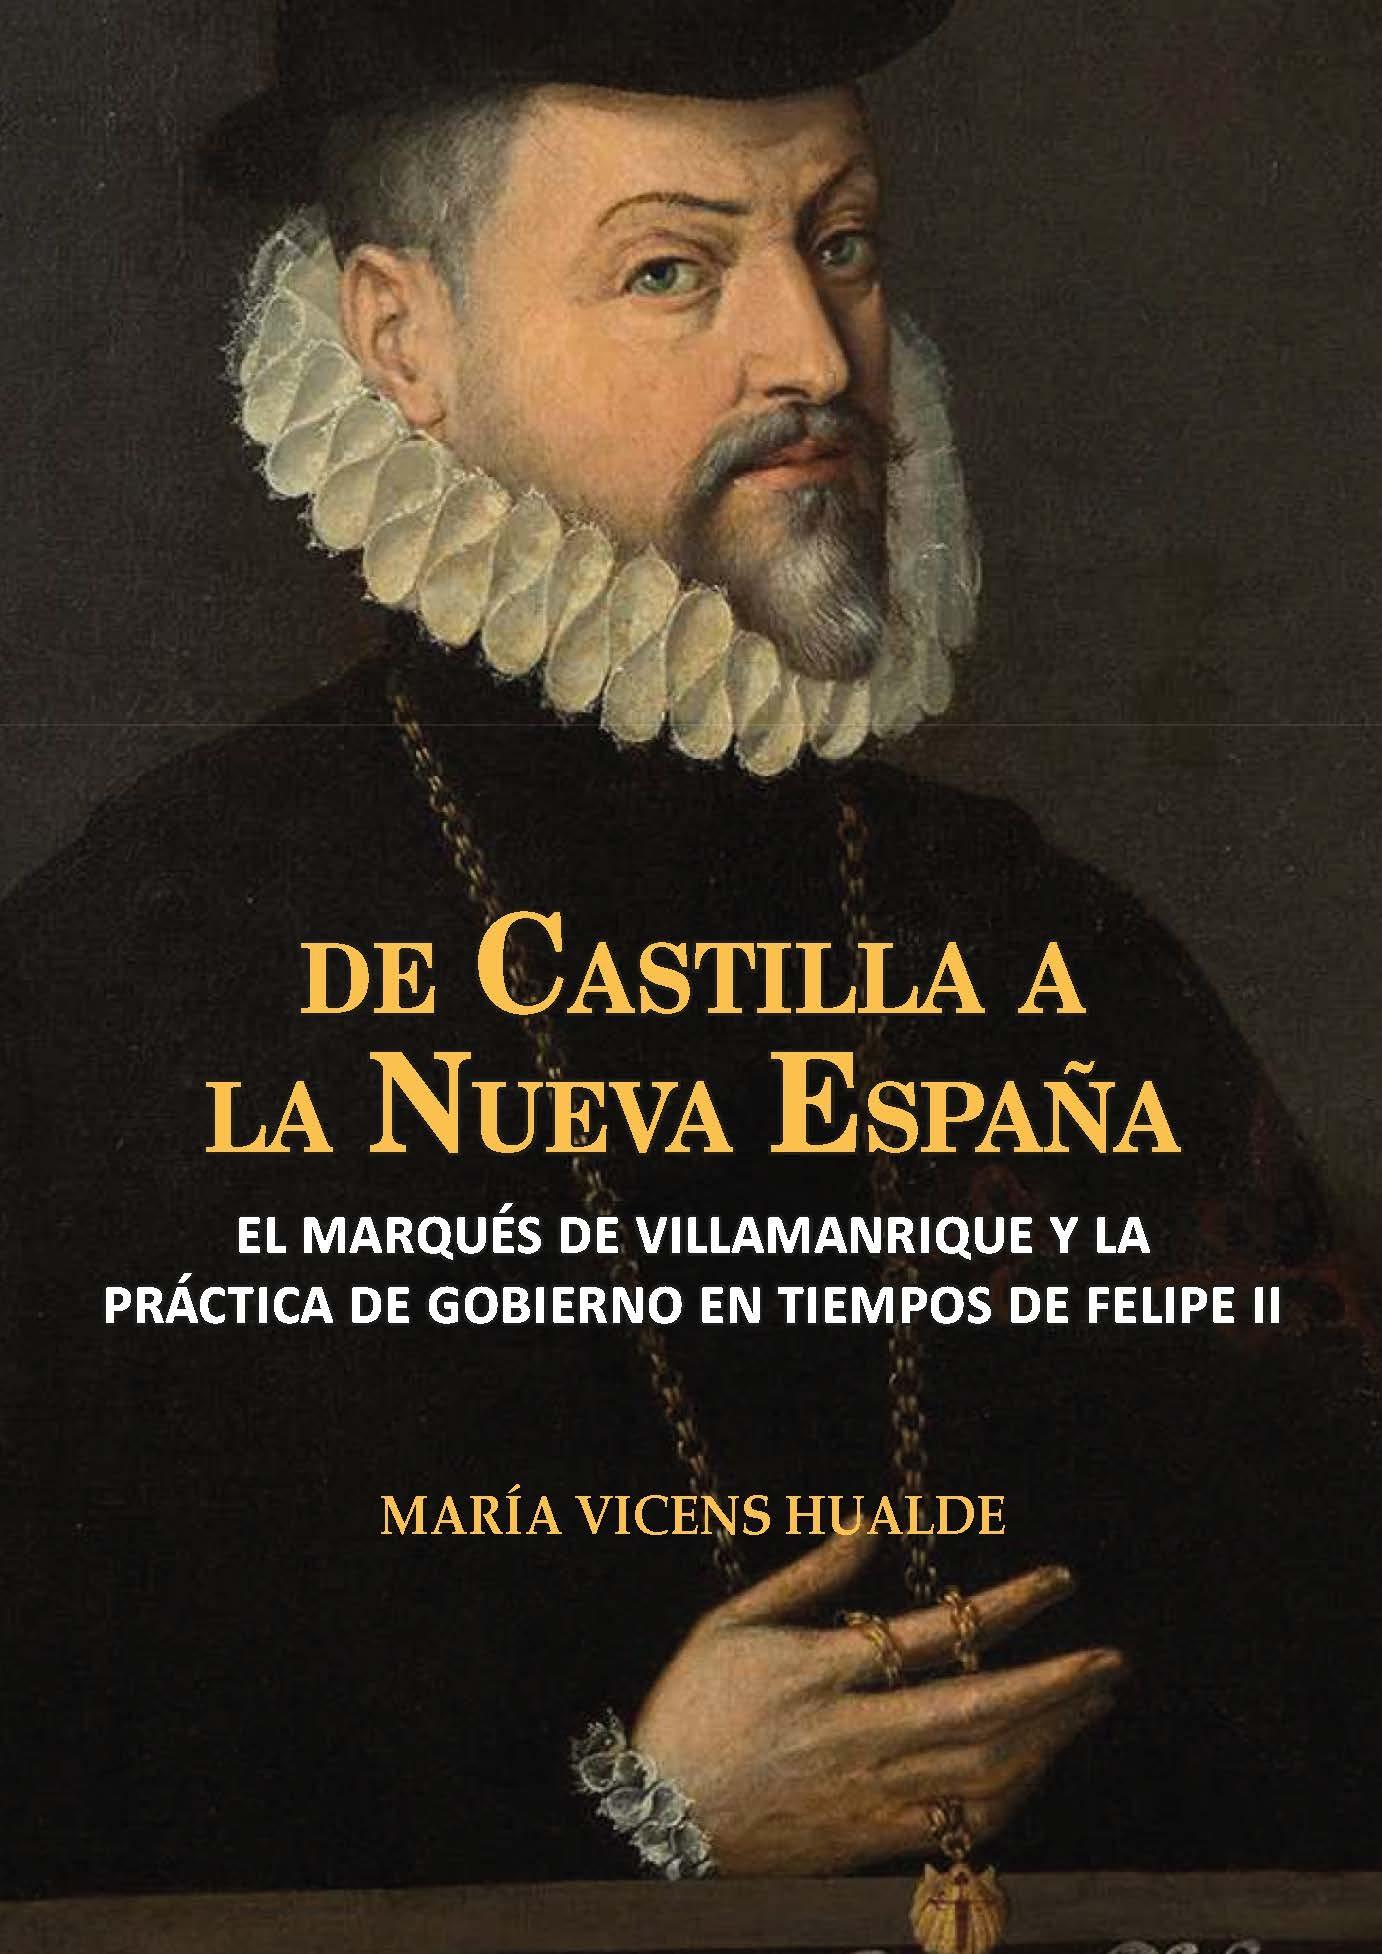 De Castilla a la Nueva España "El marqués de Villamanrique y la práctica de gobierno en tiempos de Felipe II". 